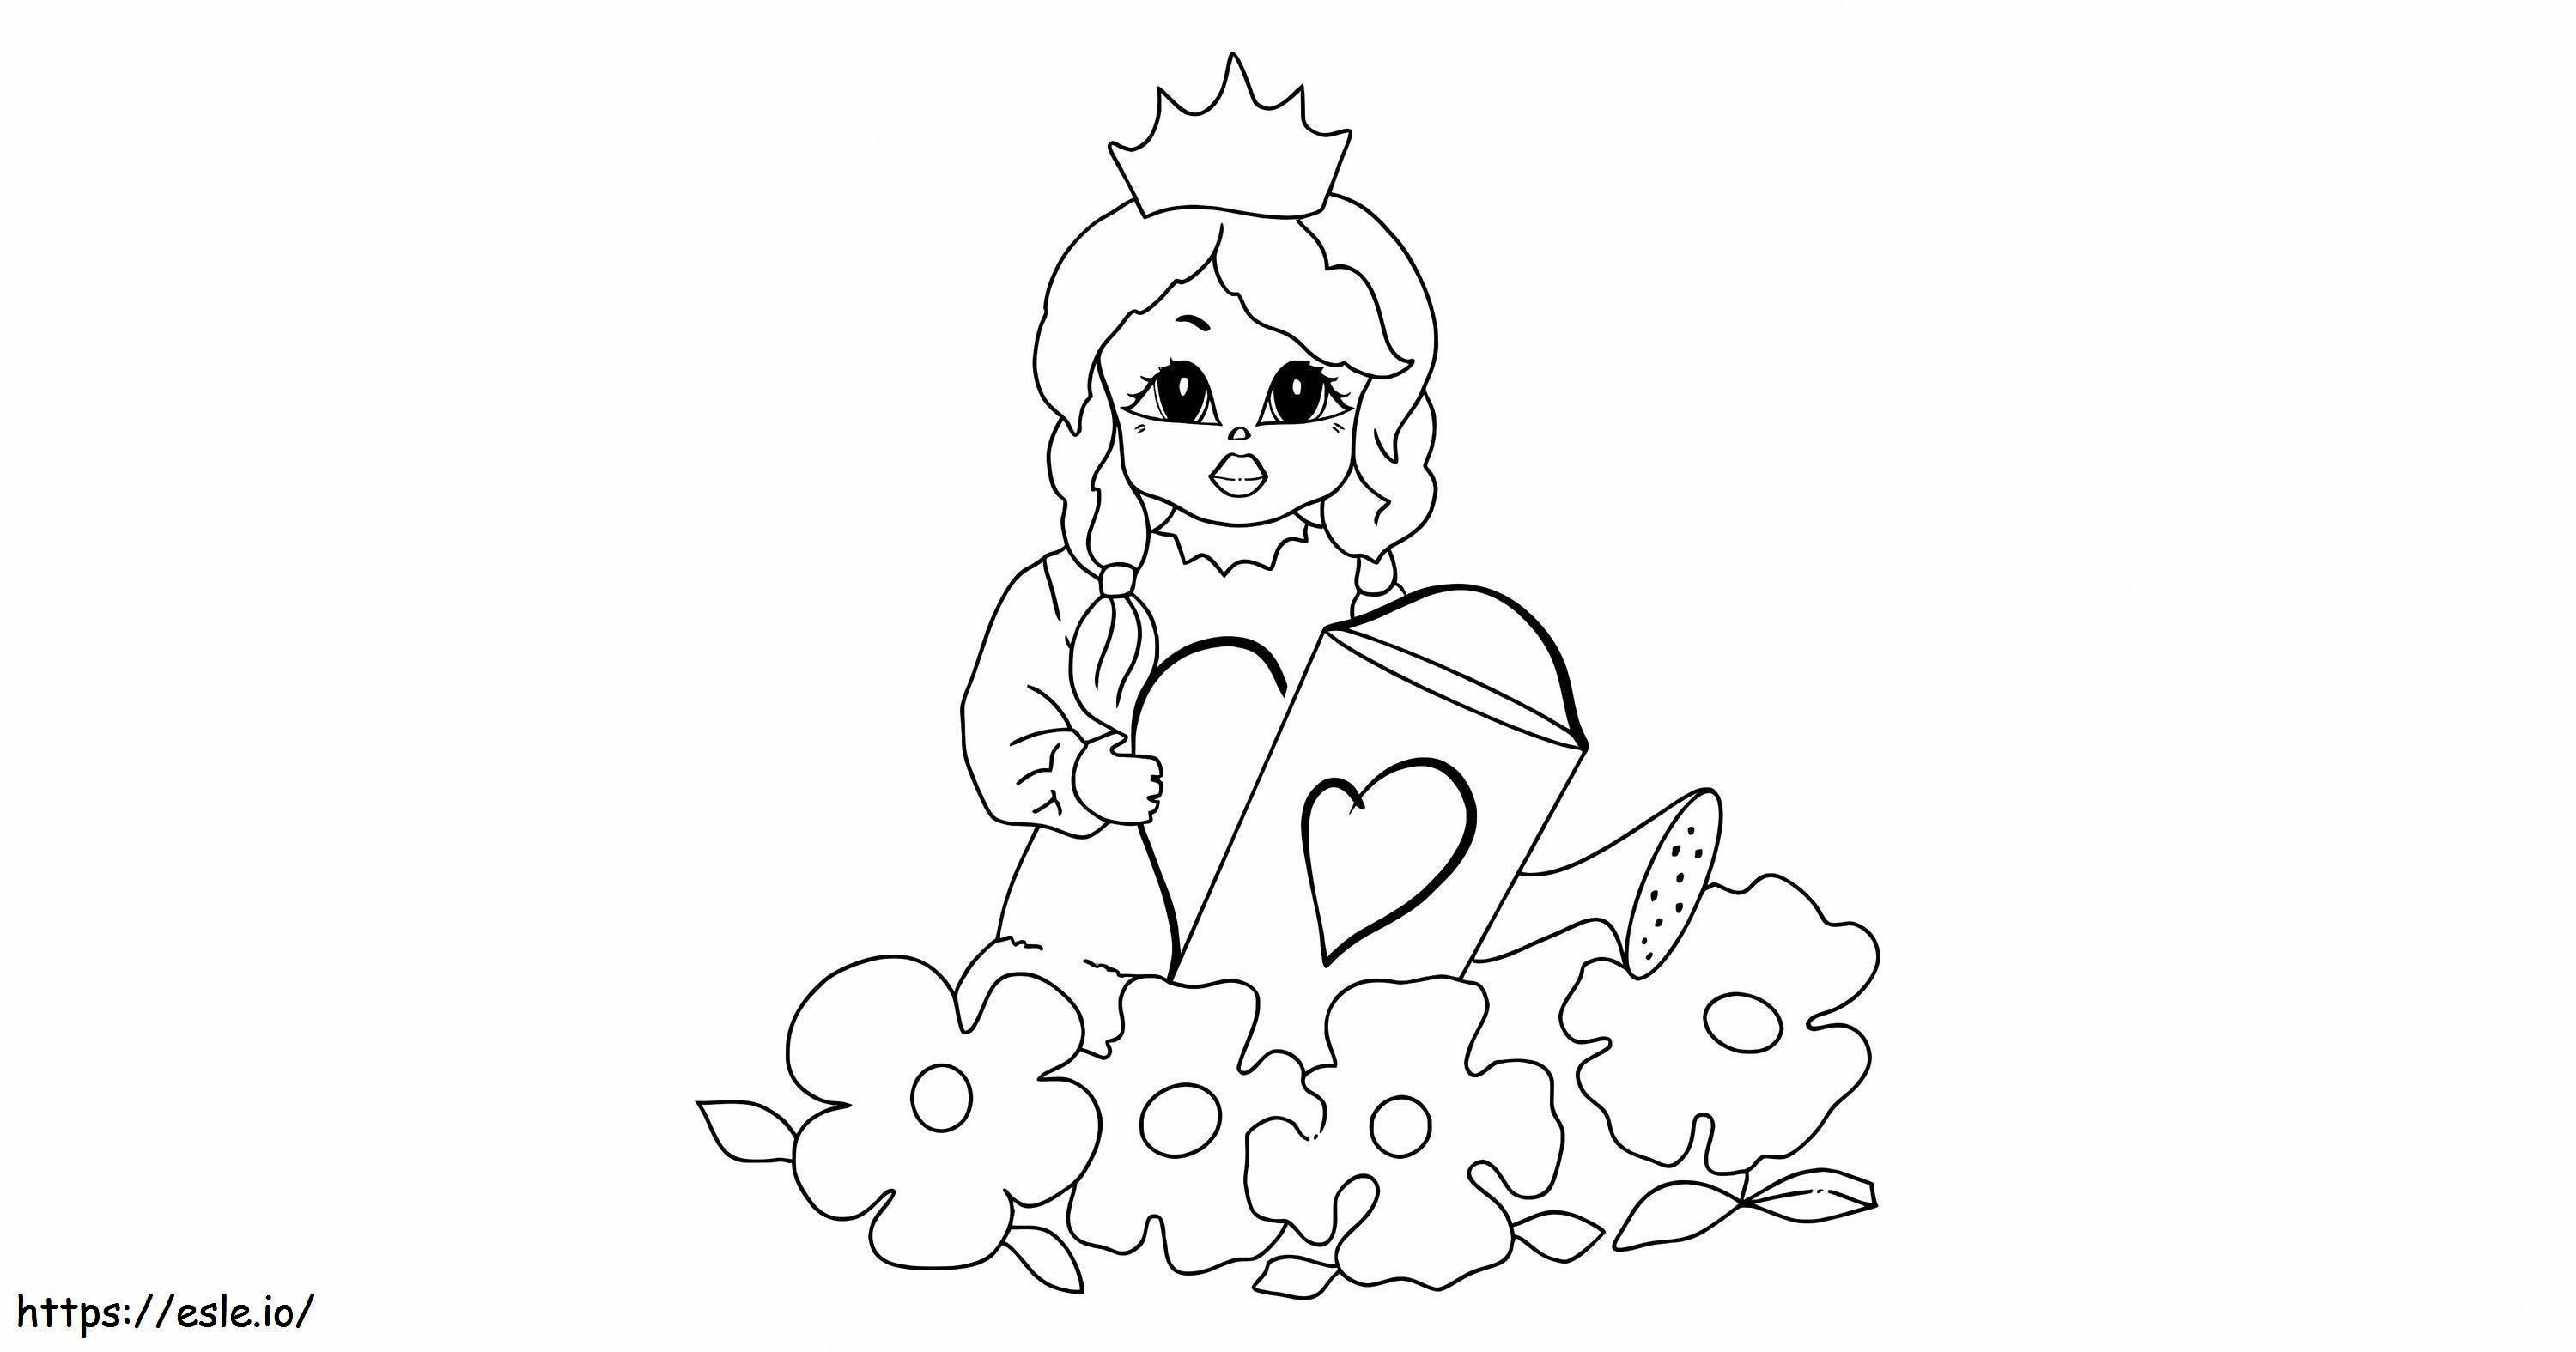 Disegna la principessa Peach che annaffia le piante da colorare